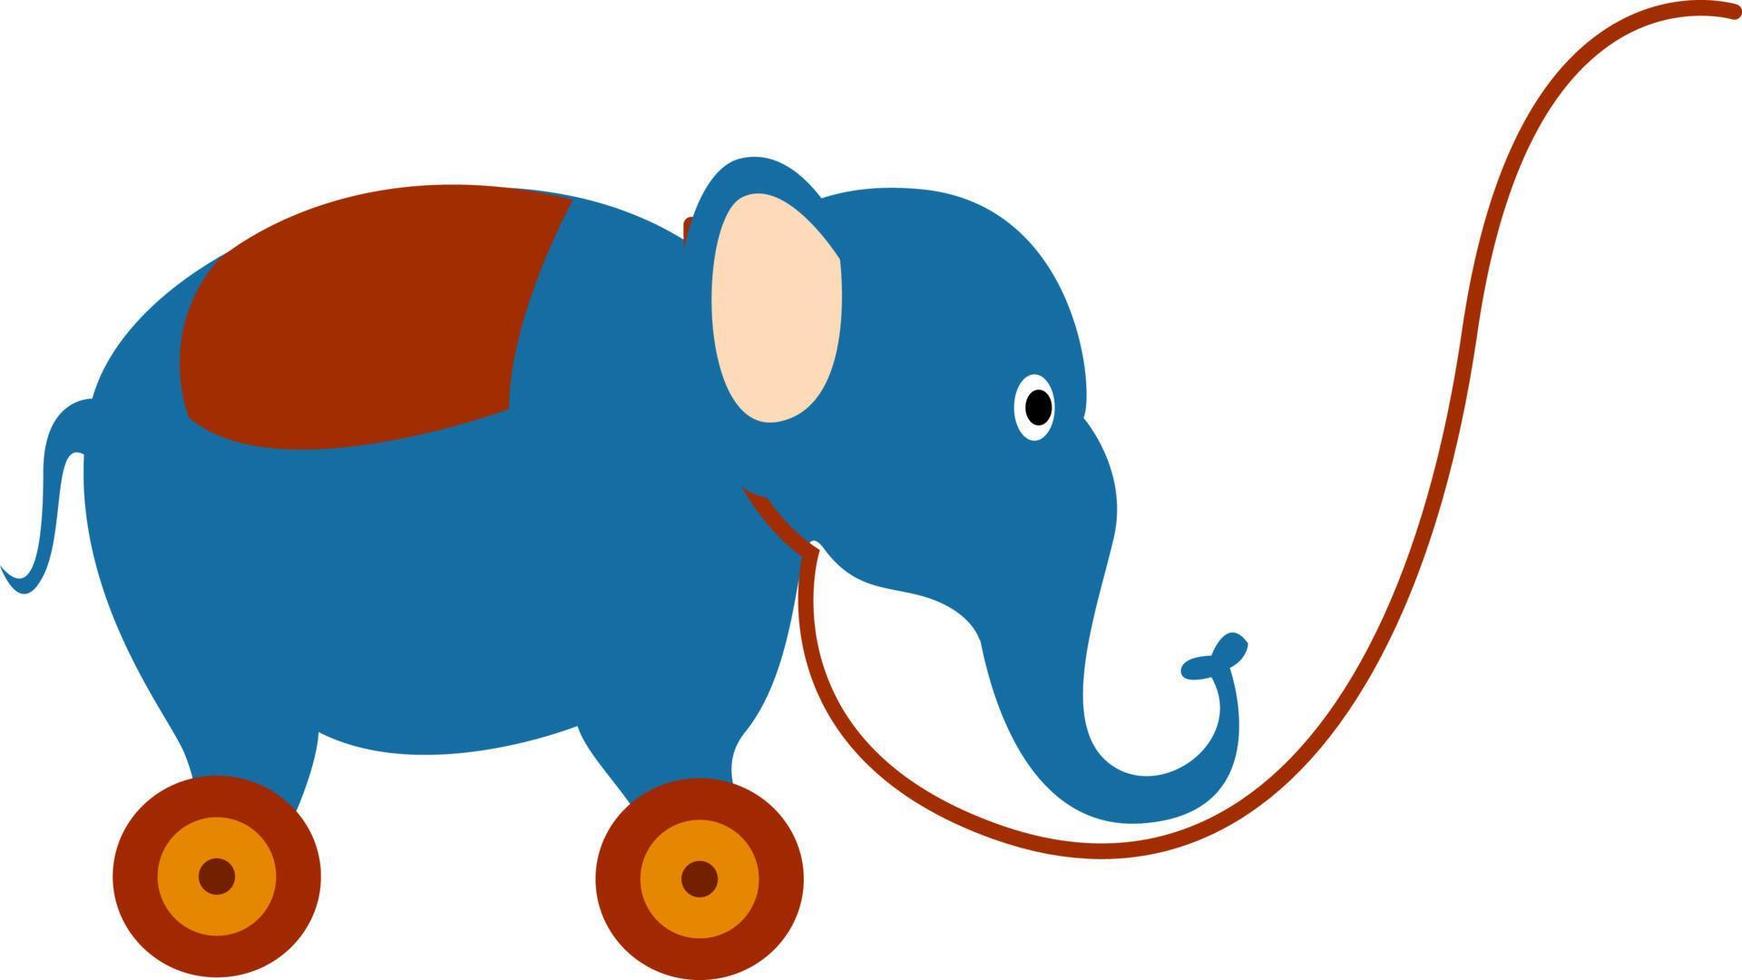 Elephant toy, illustration, vector on white background.